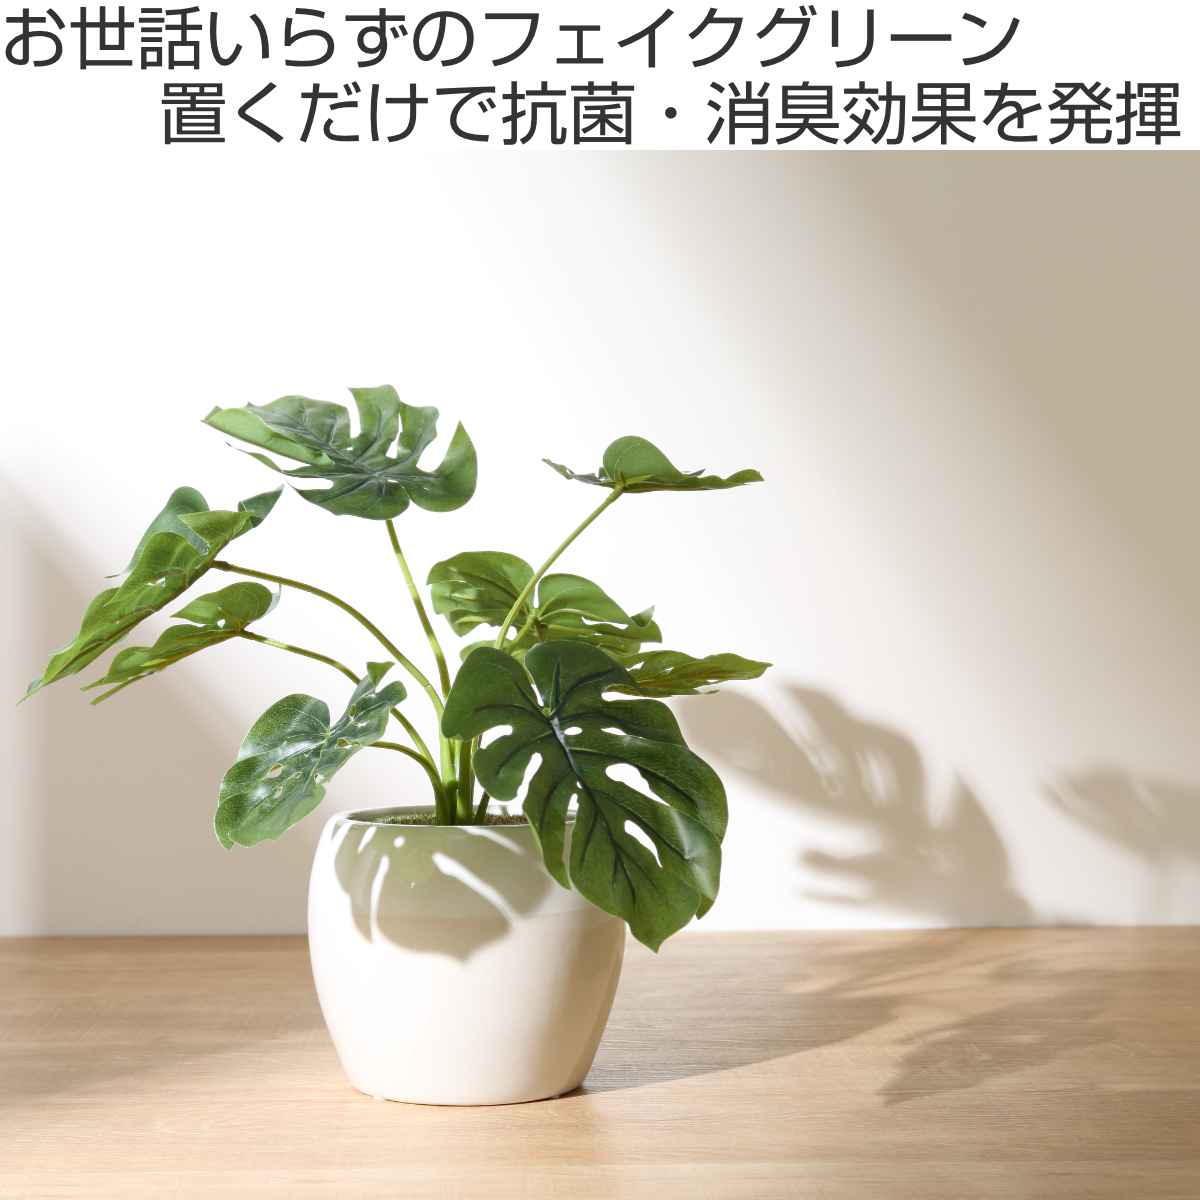 【安い超歓迎】日本製 フェイクグリーン/観葉植物 光触媒消臭 その他